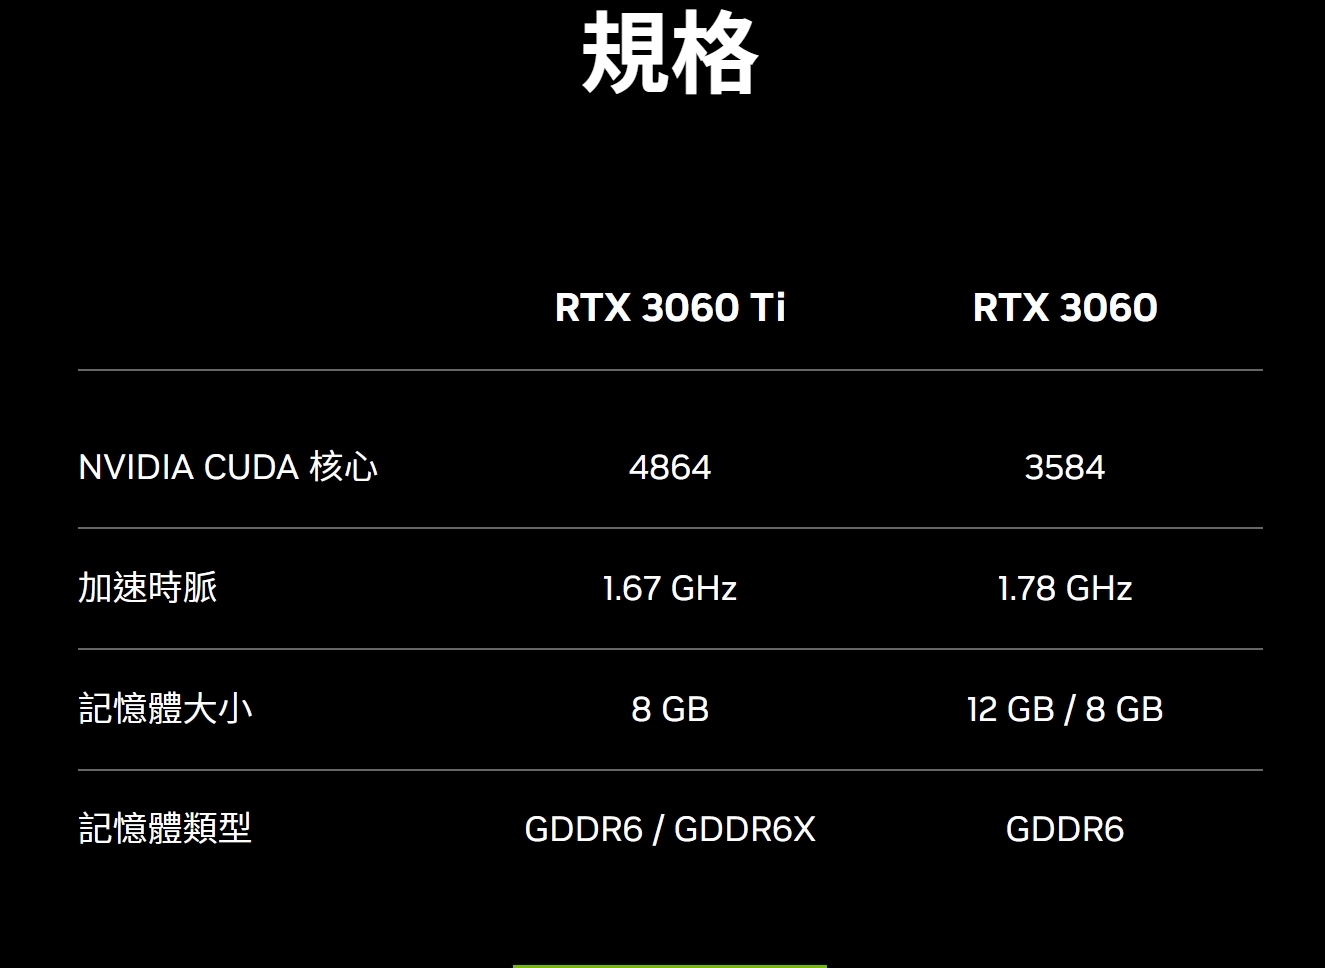 Nvidia Geforce RTX3060官方資訊 - 概略規格